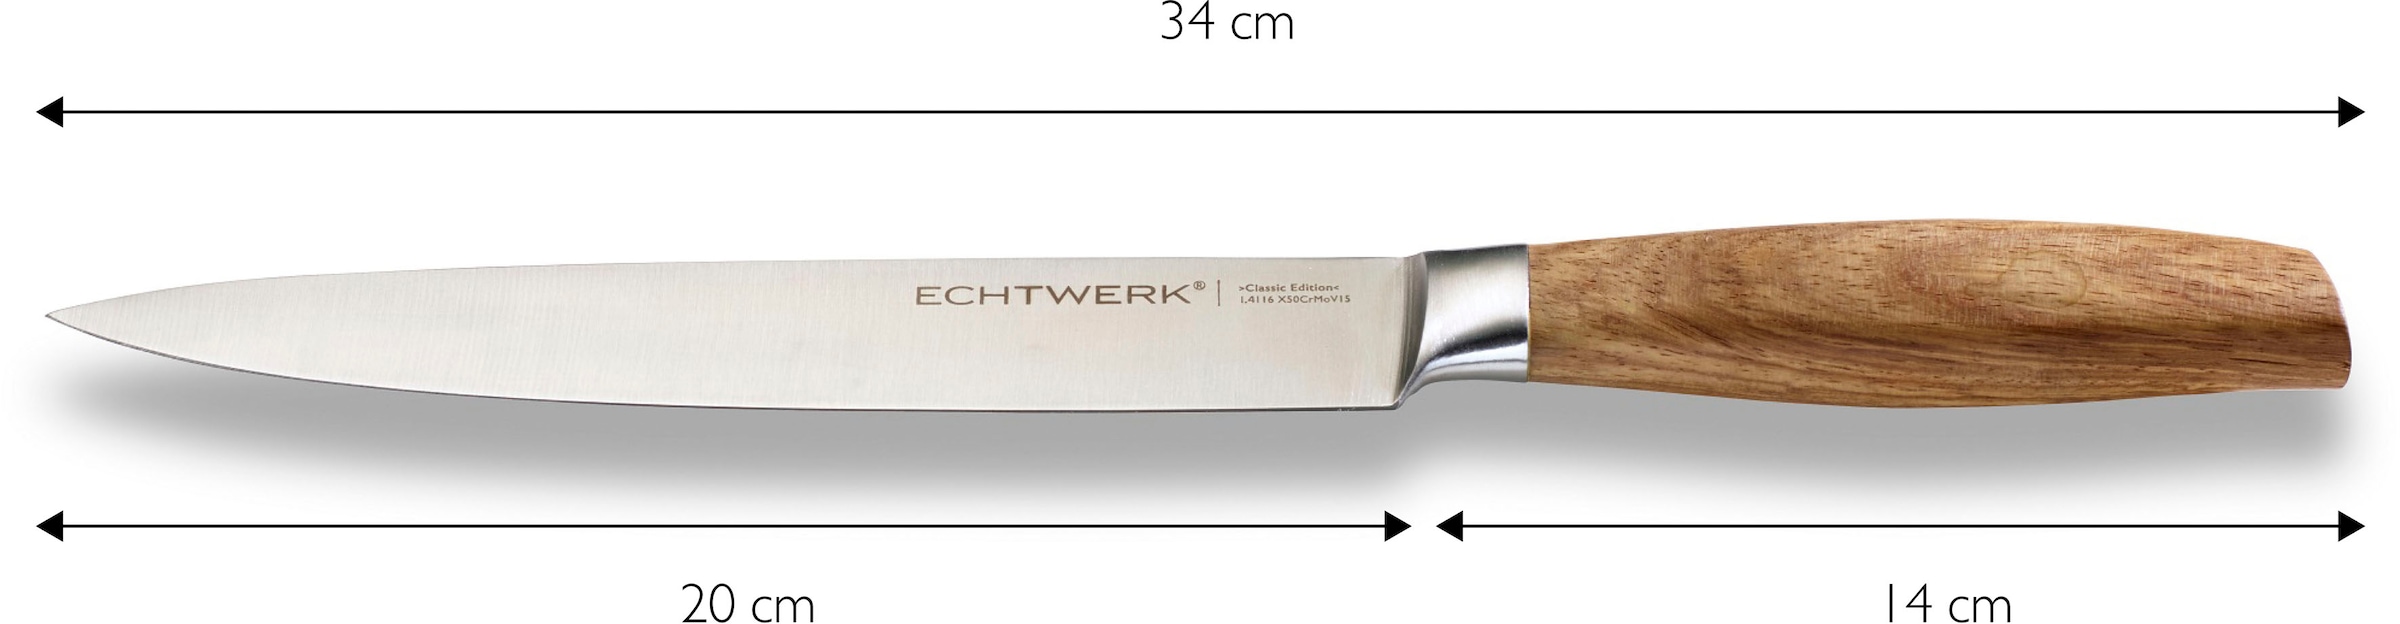 ECHTWERK Schinkenmesser »Classic Edition«, (1 tlg.), Filetiermesser, Edelstahl, Klingenlänge 20 cm, Griff aus Akazienholz